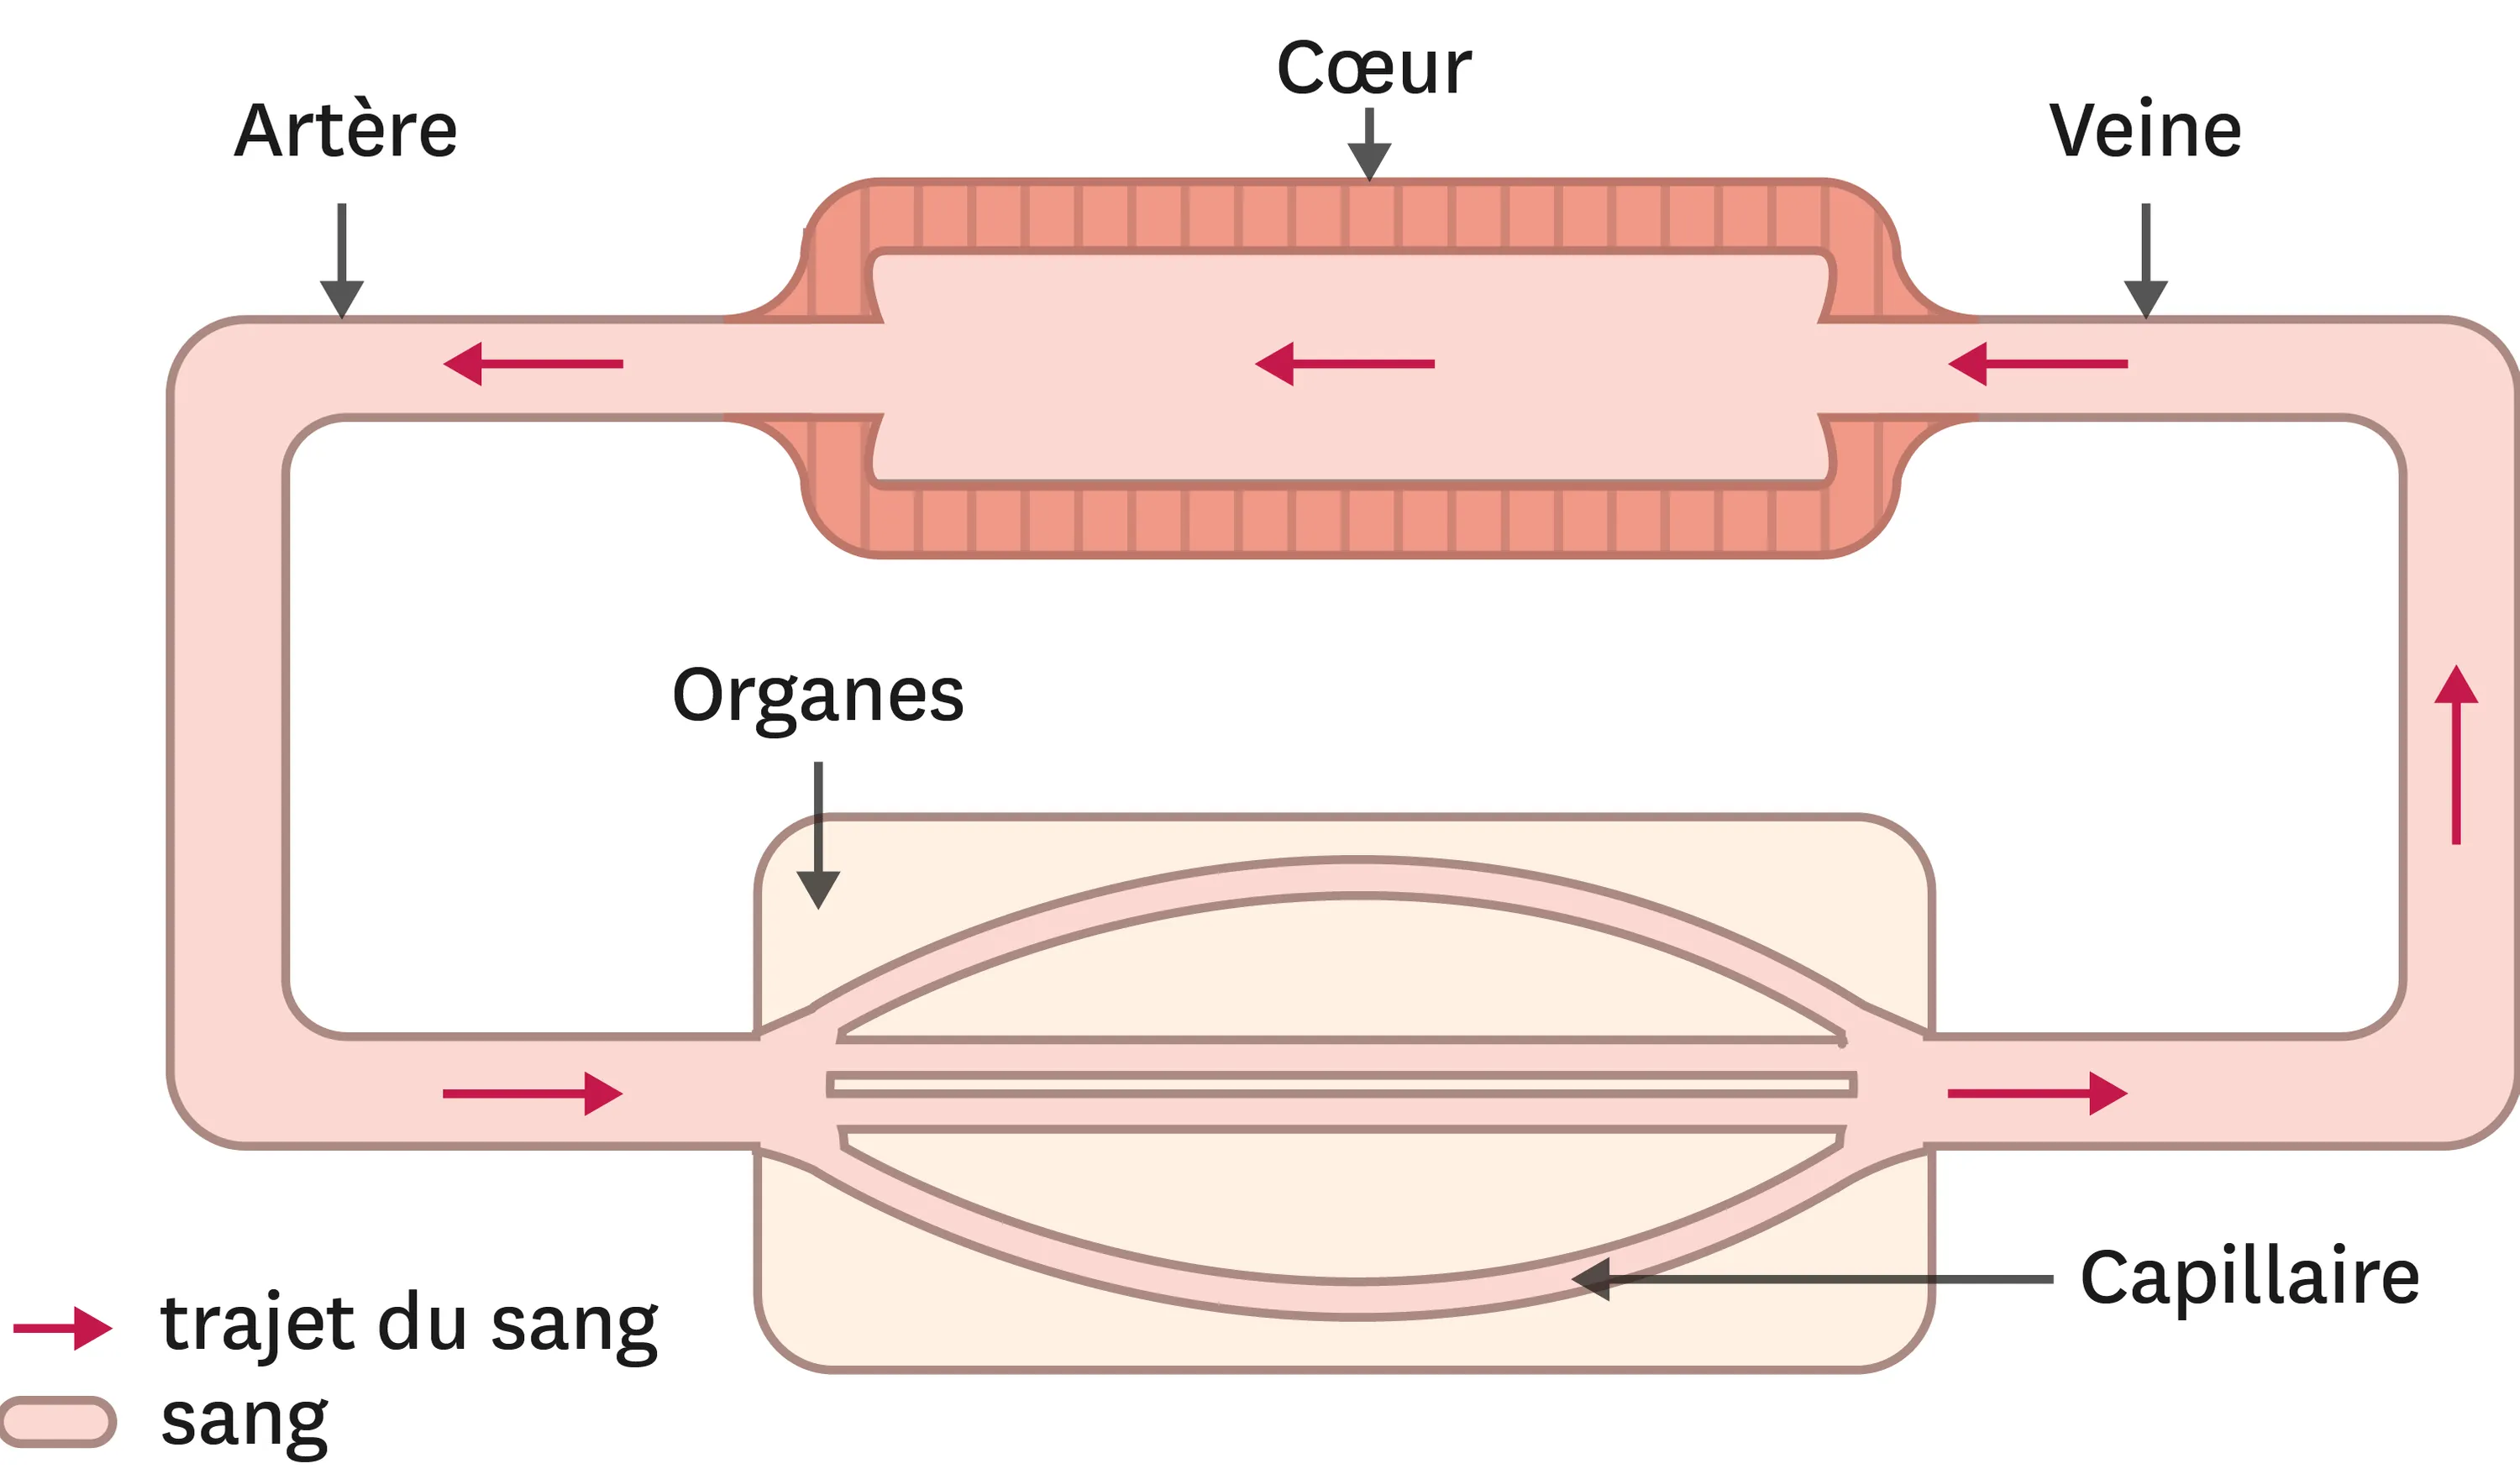 L'appareil circulatoire simplifié d'un organisme vertébré comme la grenouille : le sang passe par le coeur, puis par une artère en direction des organes. Pour alimenter l'organe entier le sang se répand entre différent capillaires, puis il retourne au coeur.